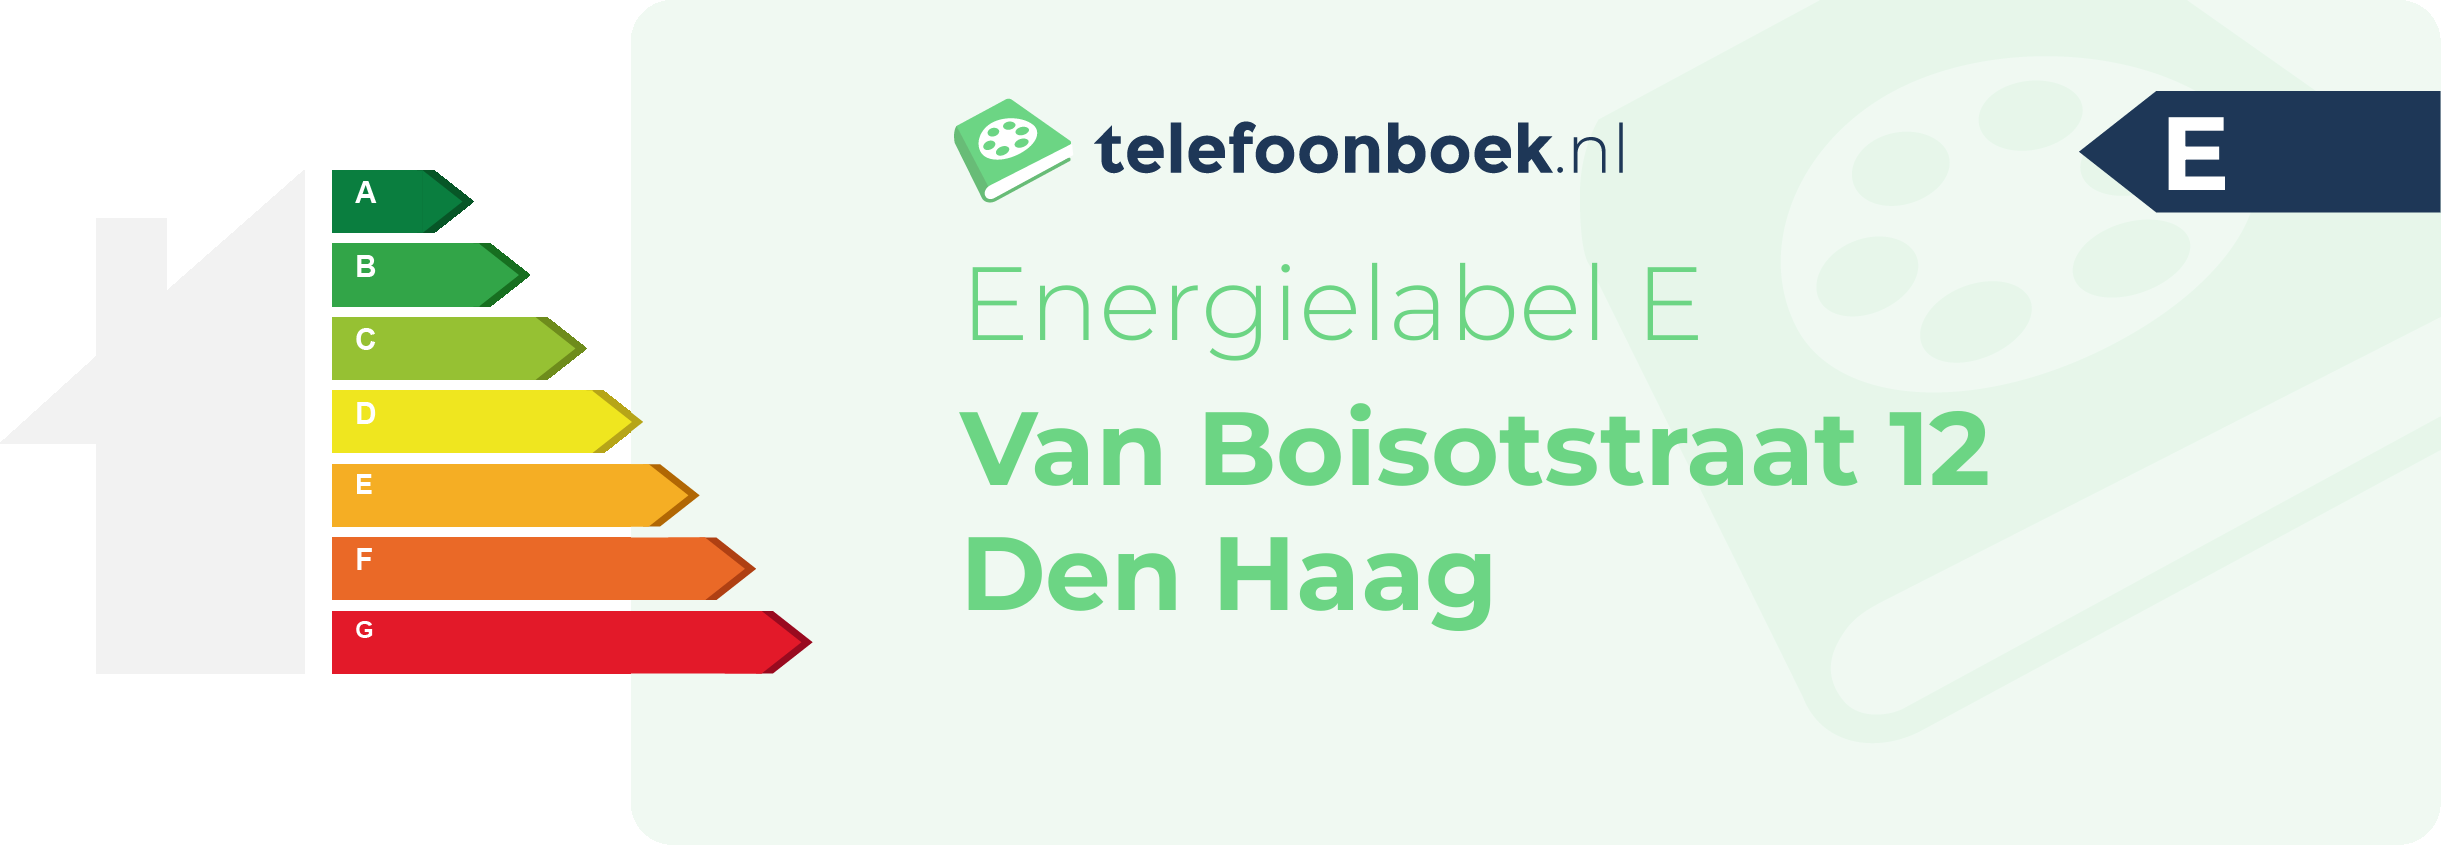 Energielabel Van Boisotstraat 12 Den Haag